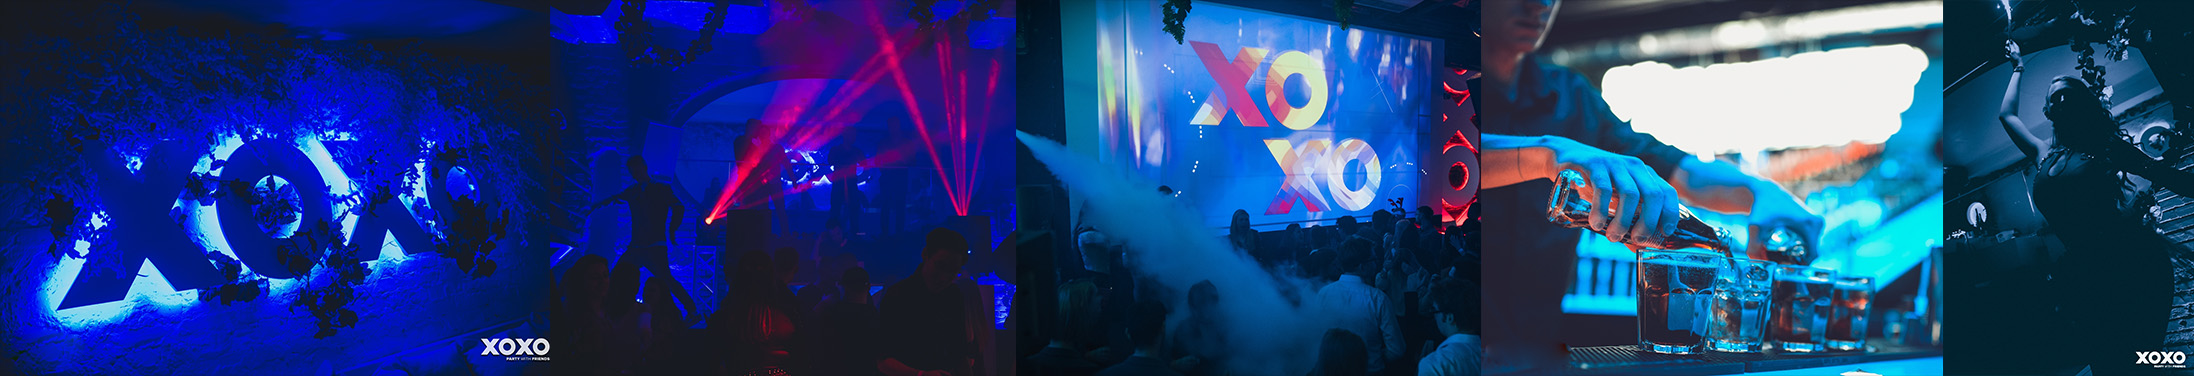 Organizacja urodzin do A do Z w klubie XOXO EVENT SPACE